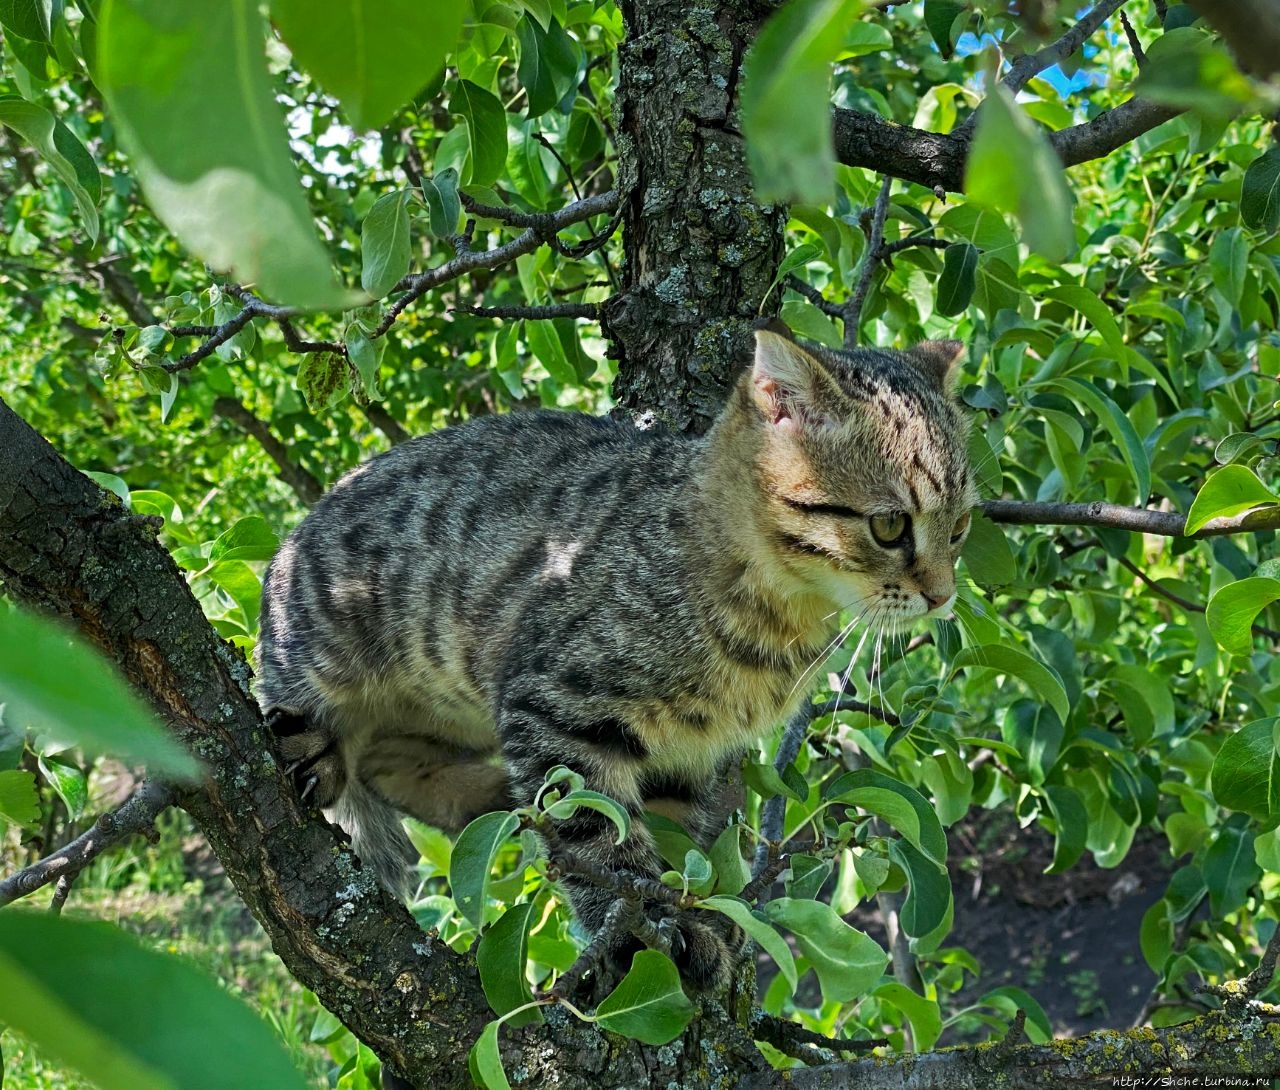 8 августа — Всемирный день кошек (World Cat Day) Рогань, Украина